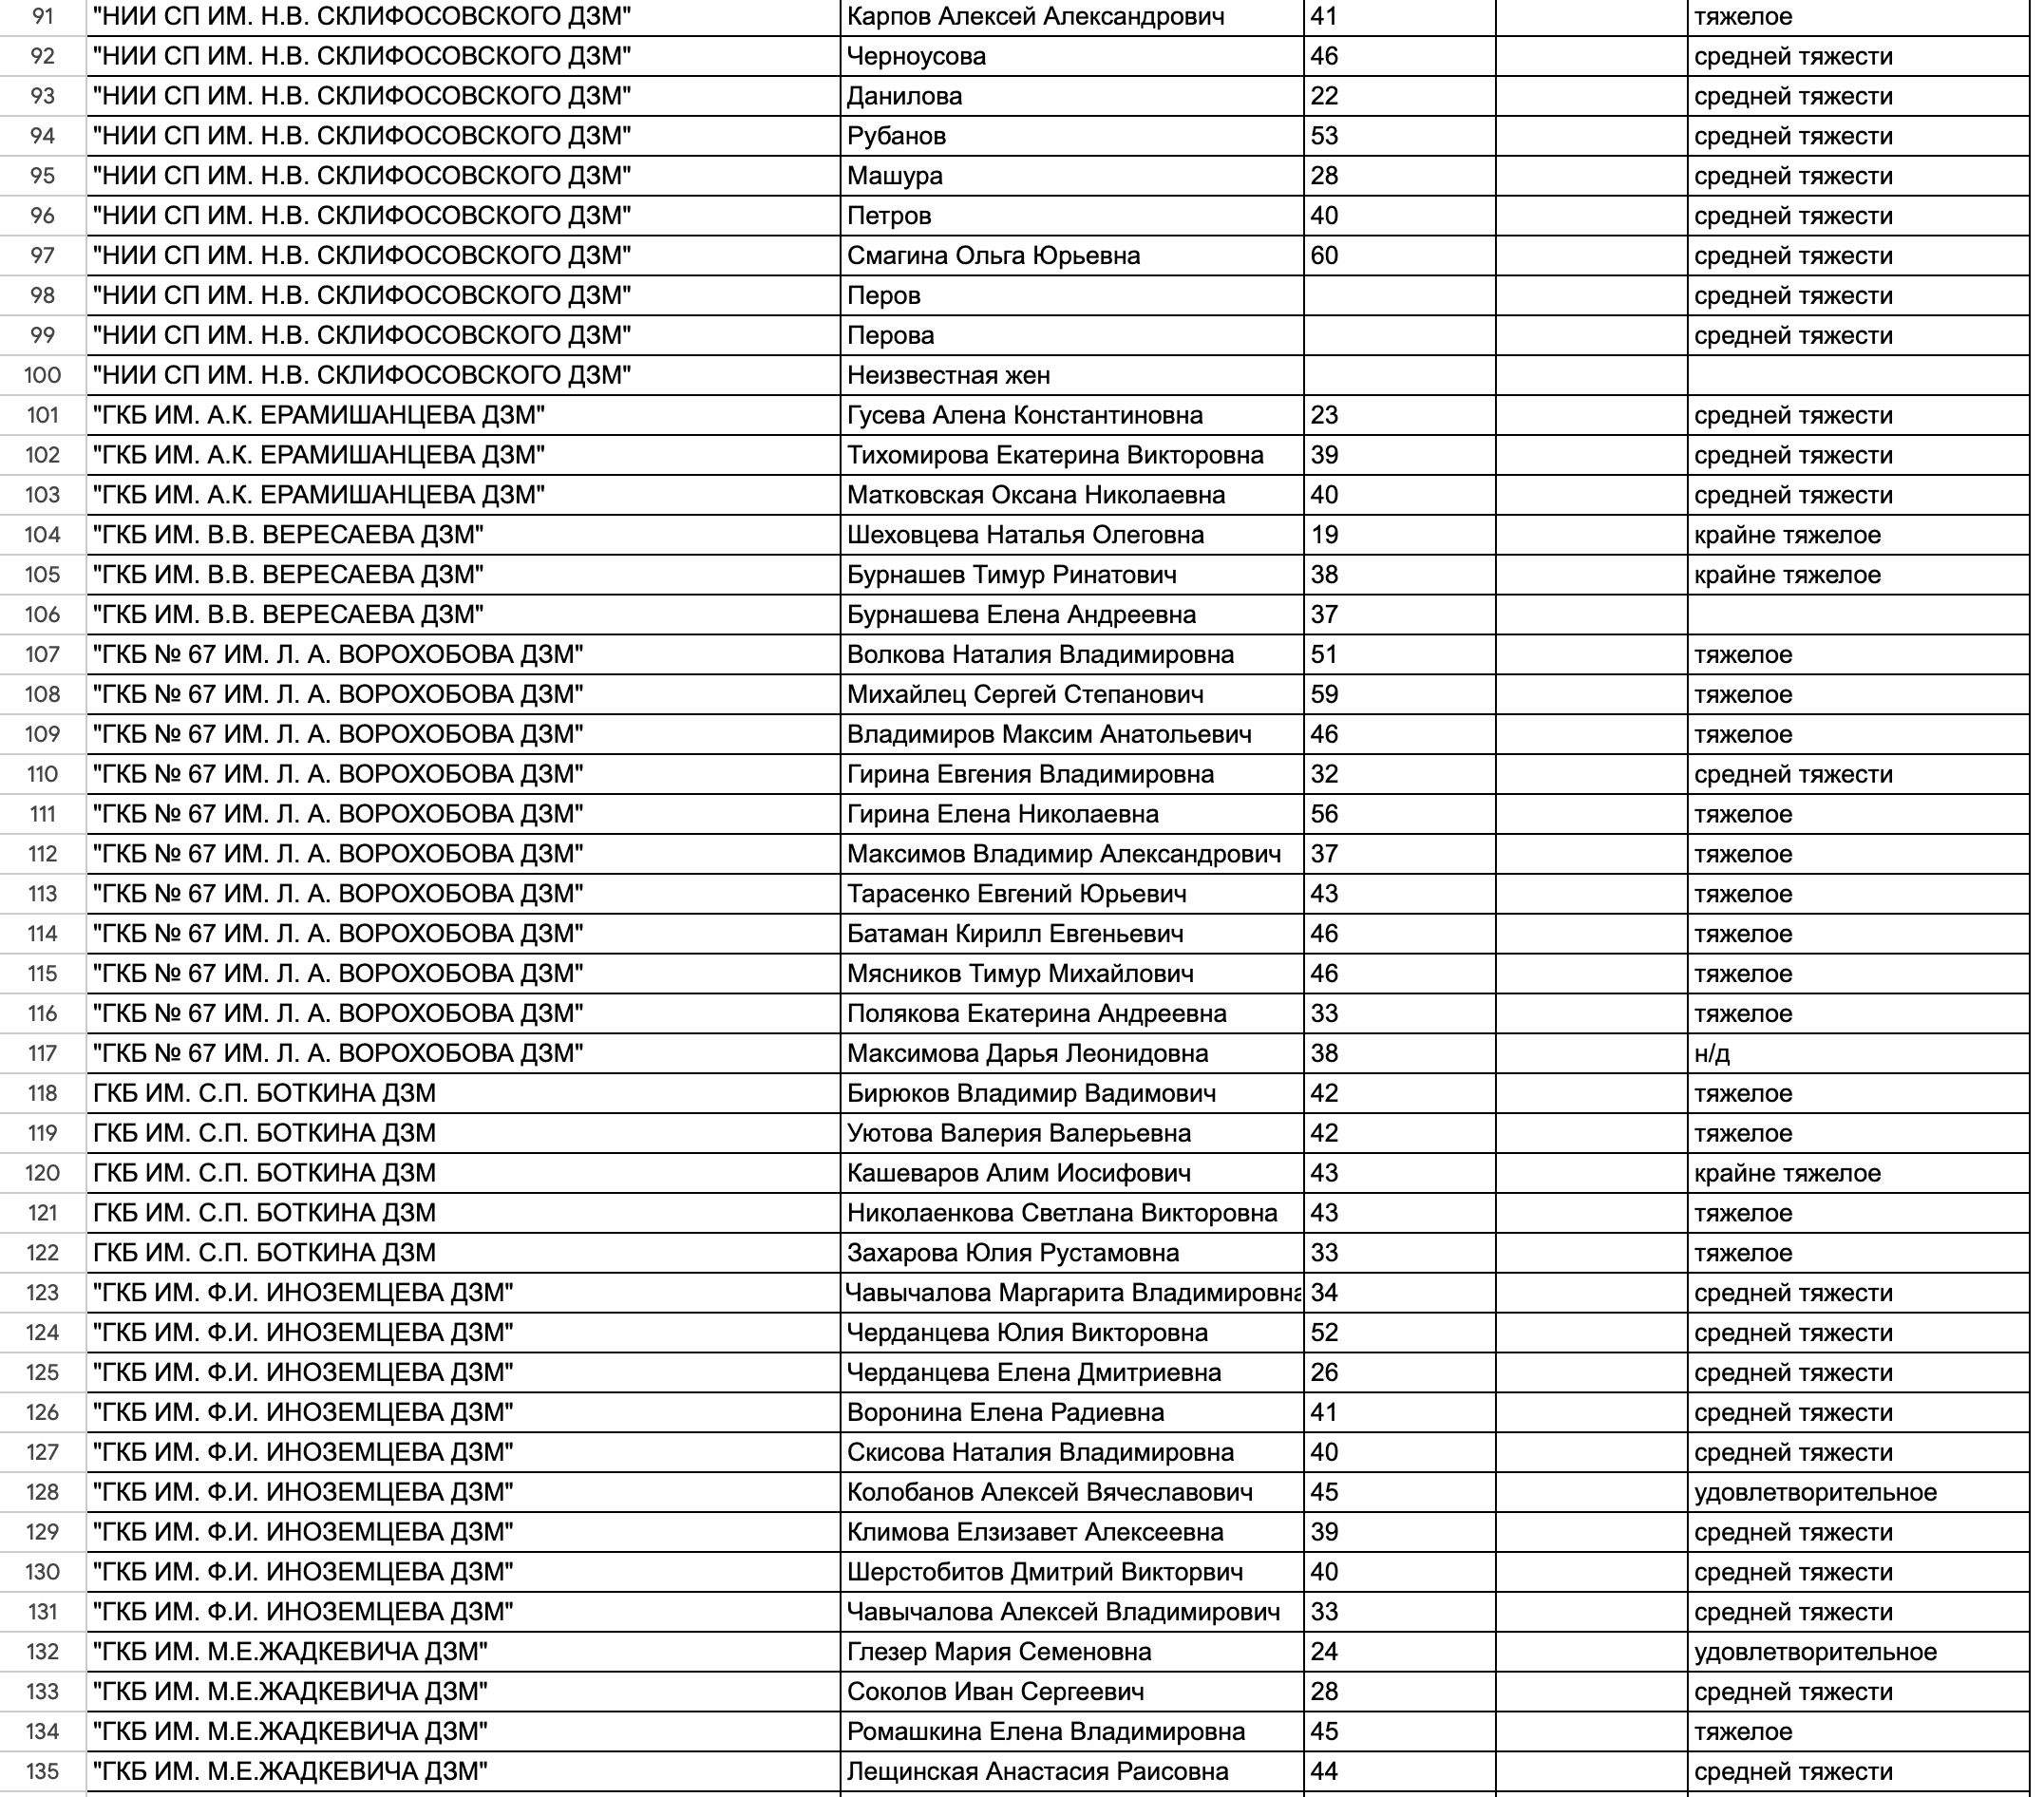 Списки погибших при теракте в подмосковье